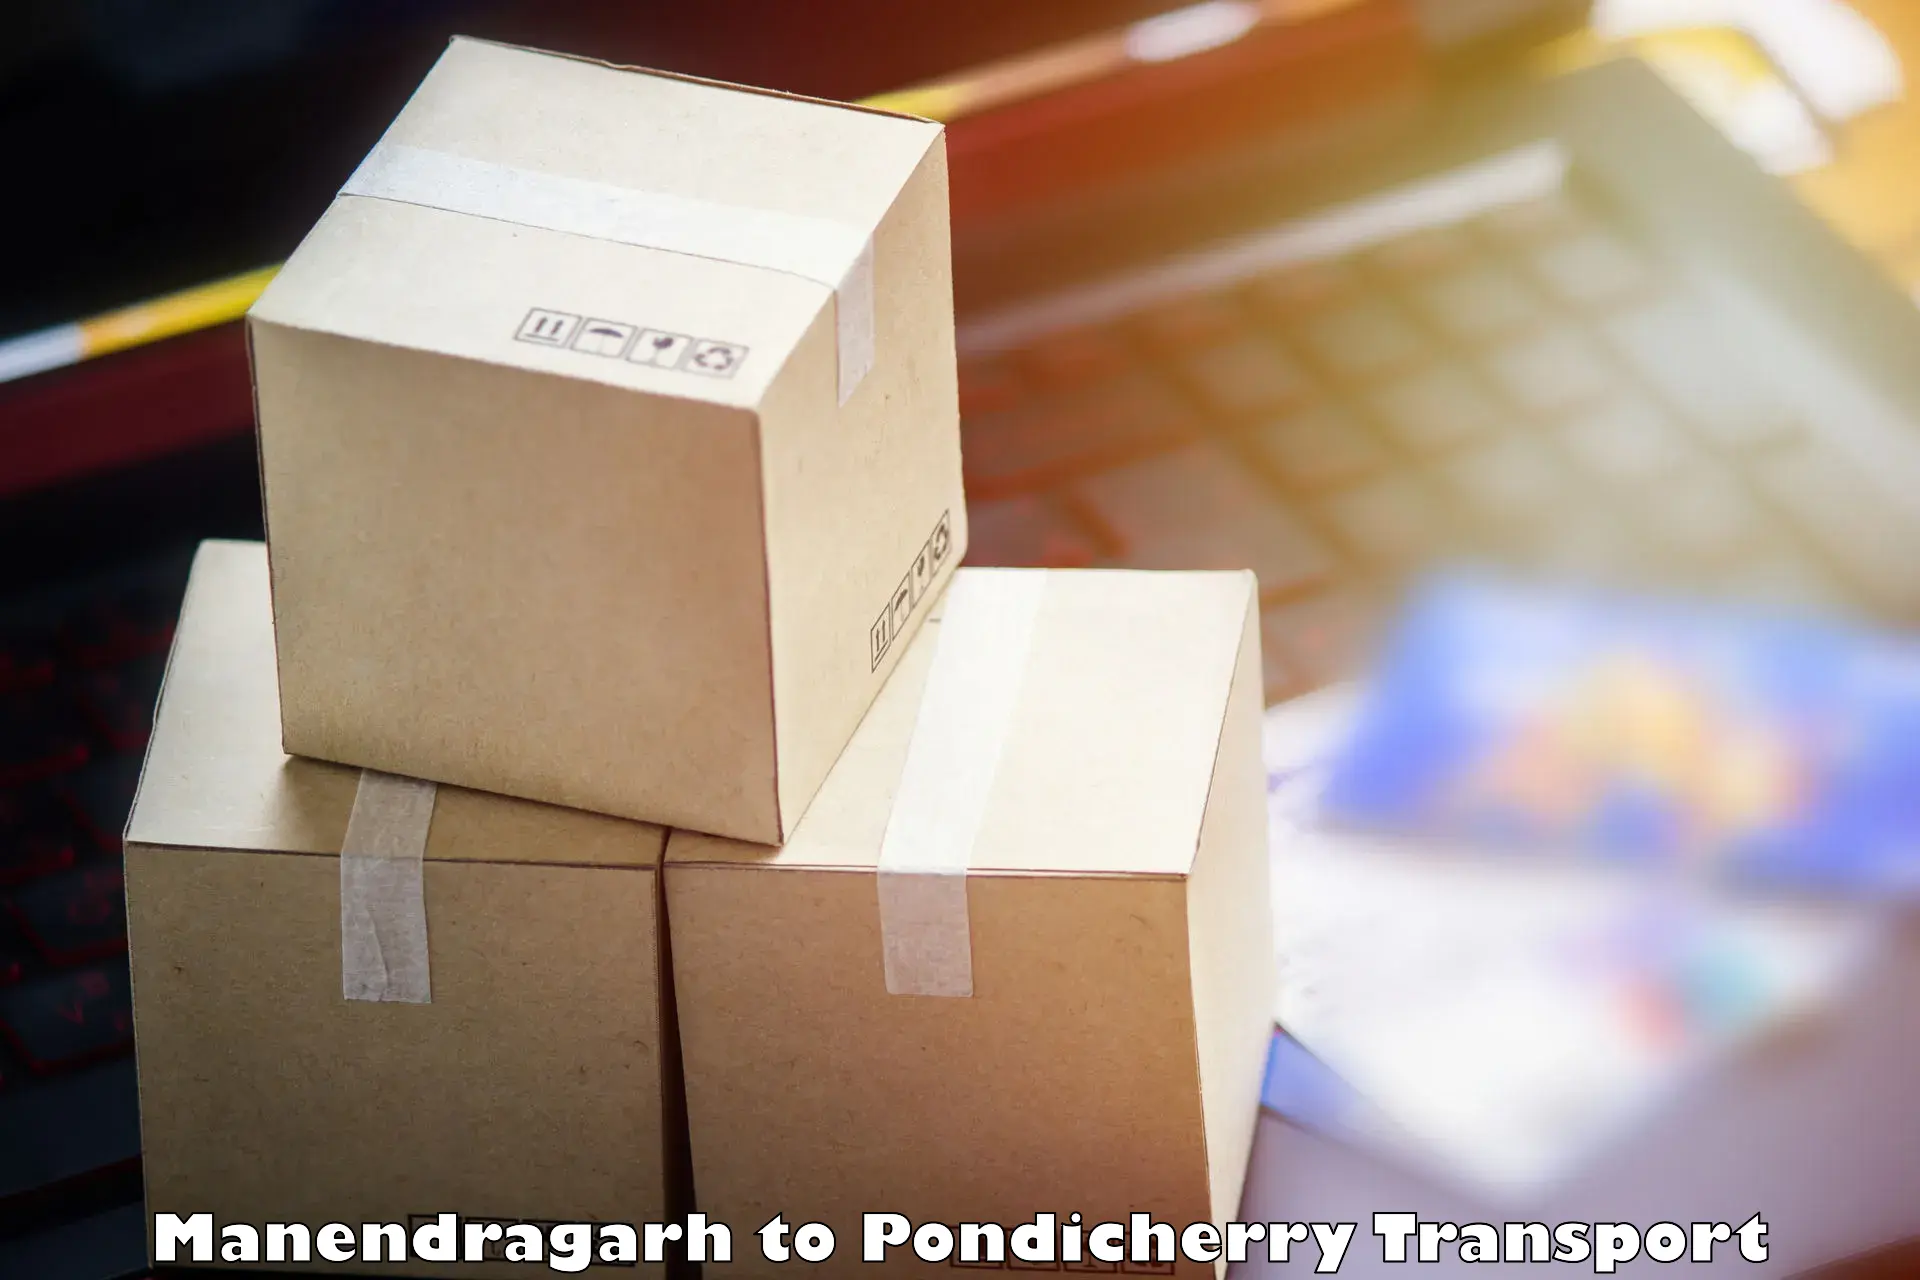 Transport services Manendragarh to Pondicherry